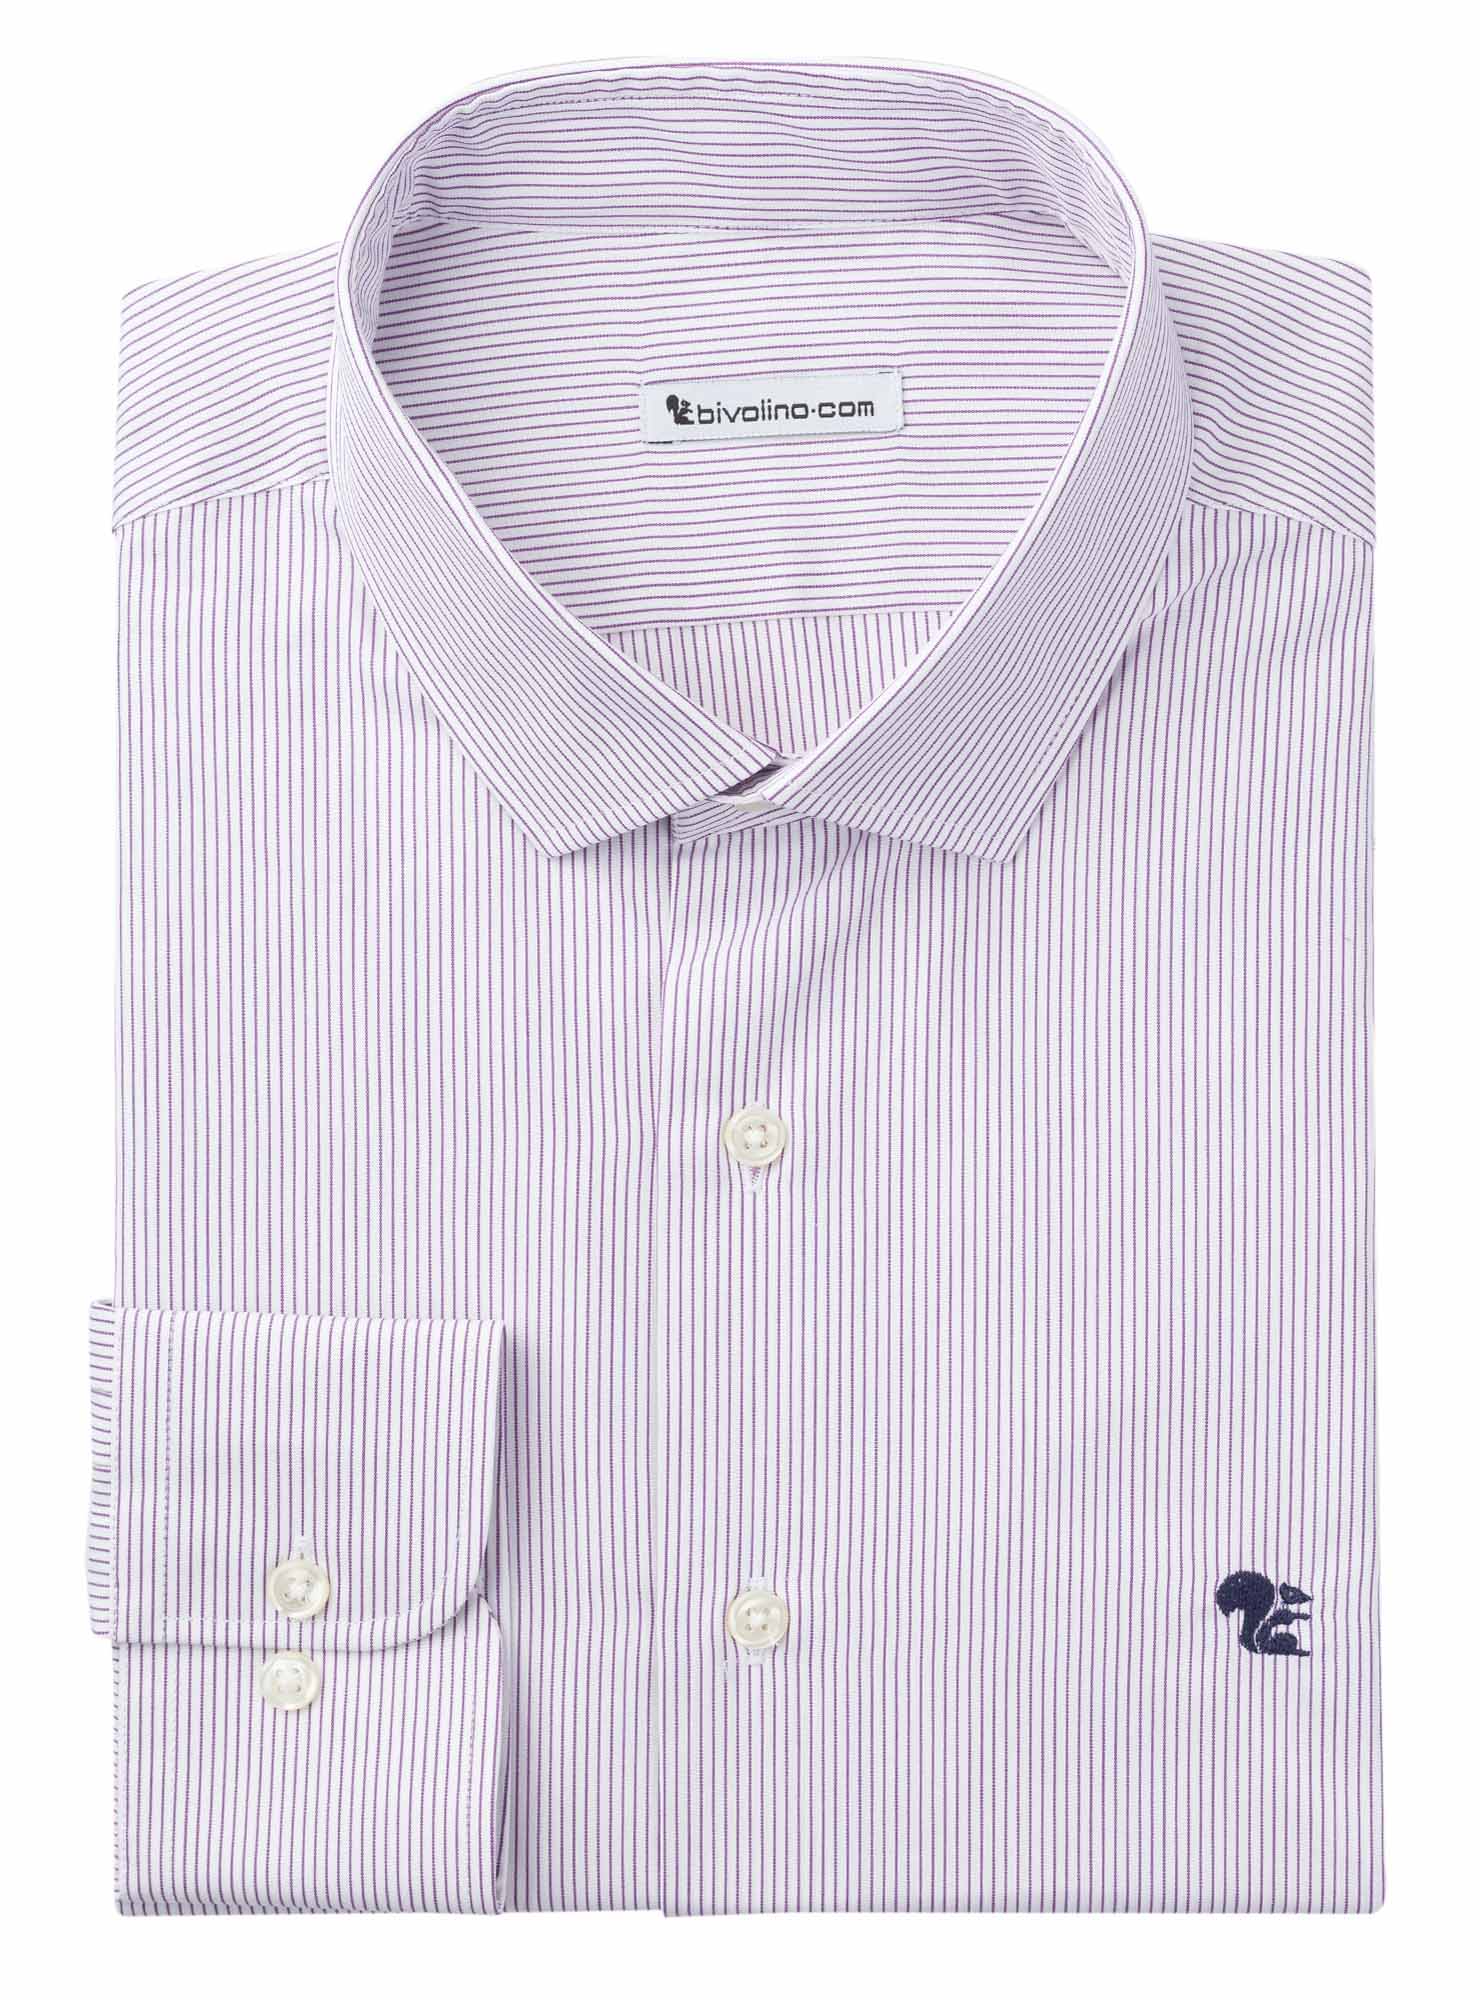 CASTEL GIORGIO - poplin purple stripes men shirt - ORIS 2-THOMAS MASON